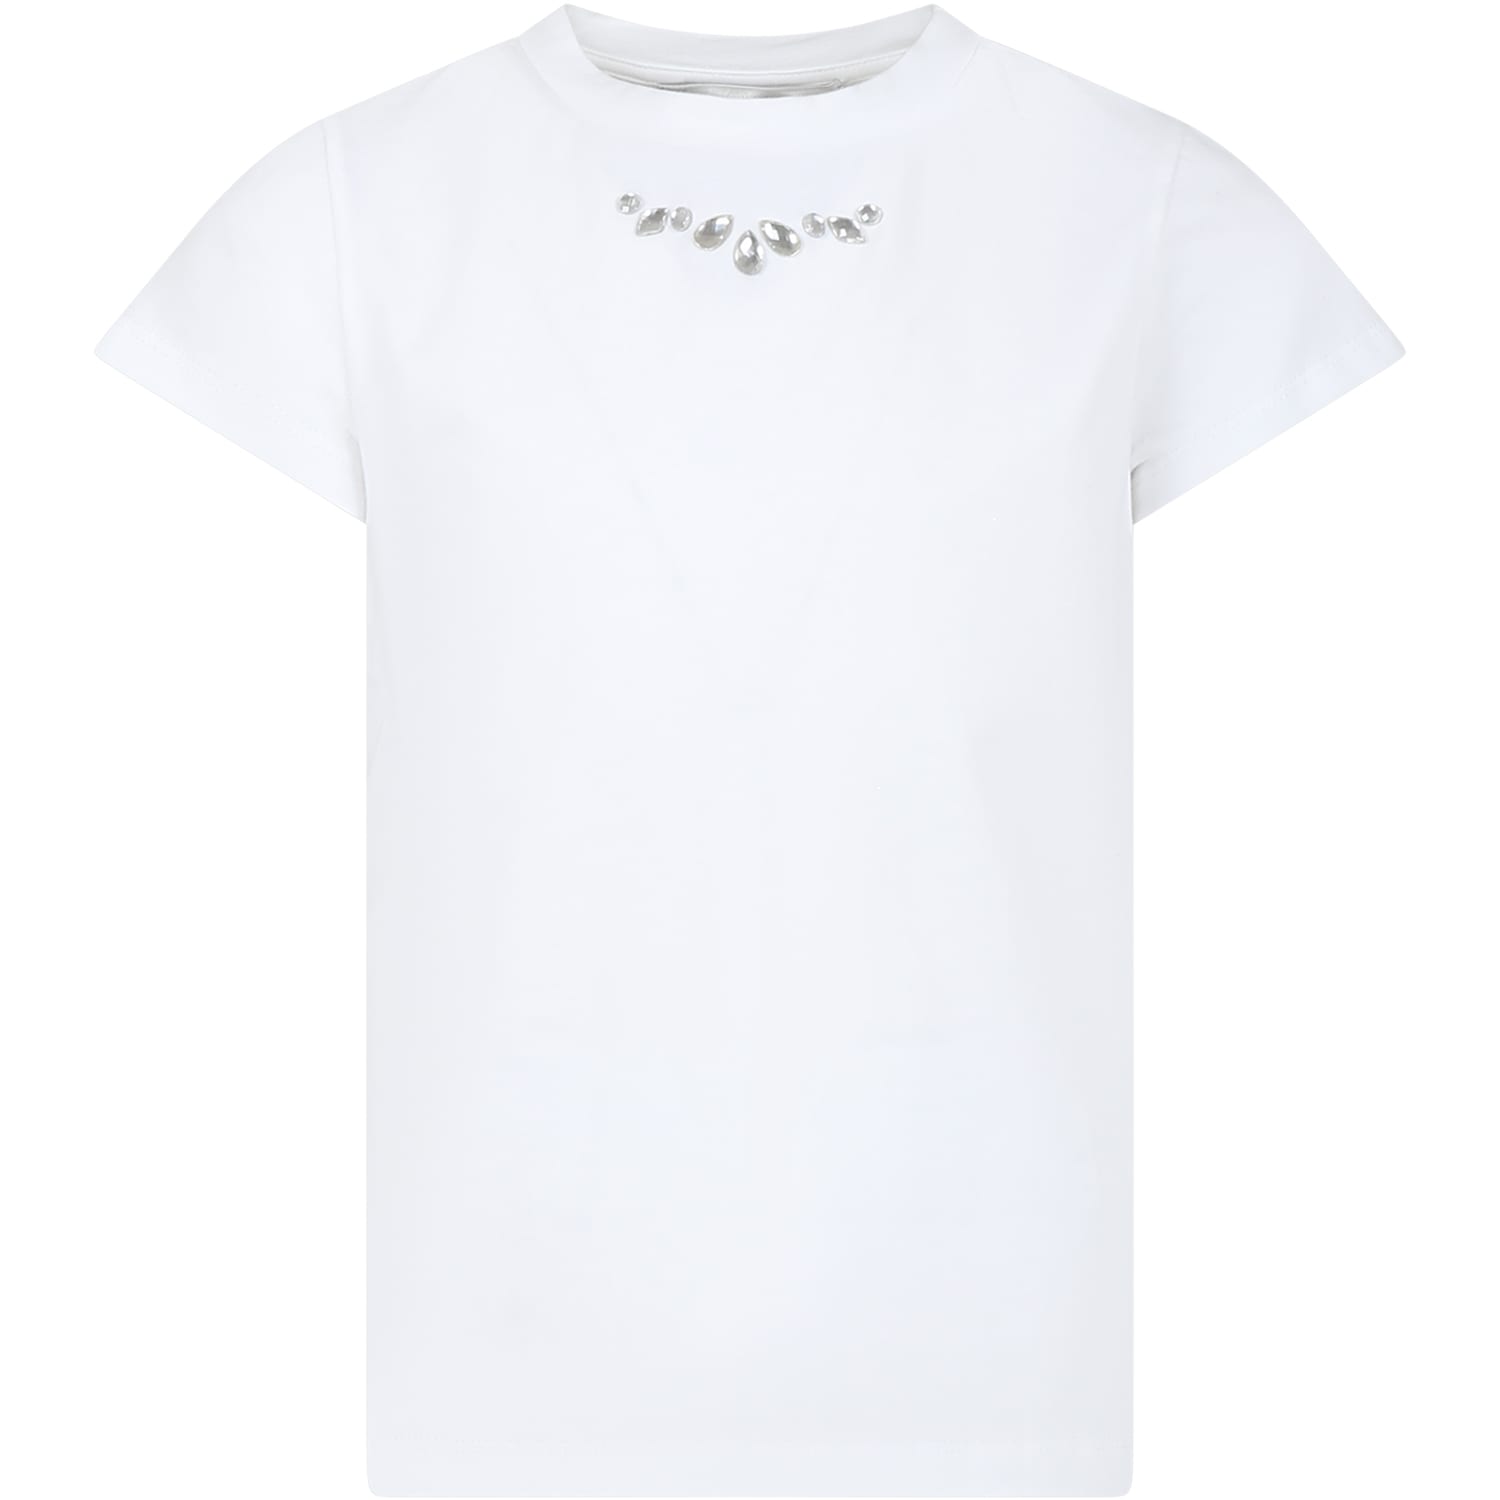 Simonetta Kids' White T-shirt For Girl